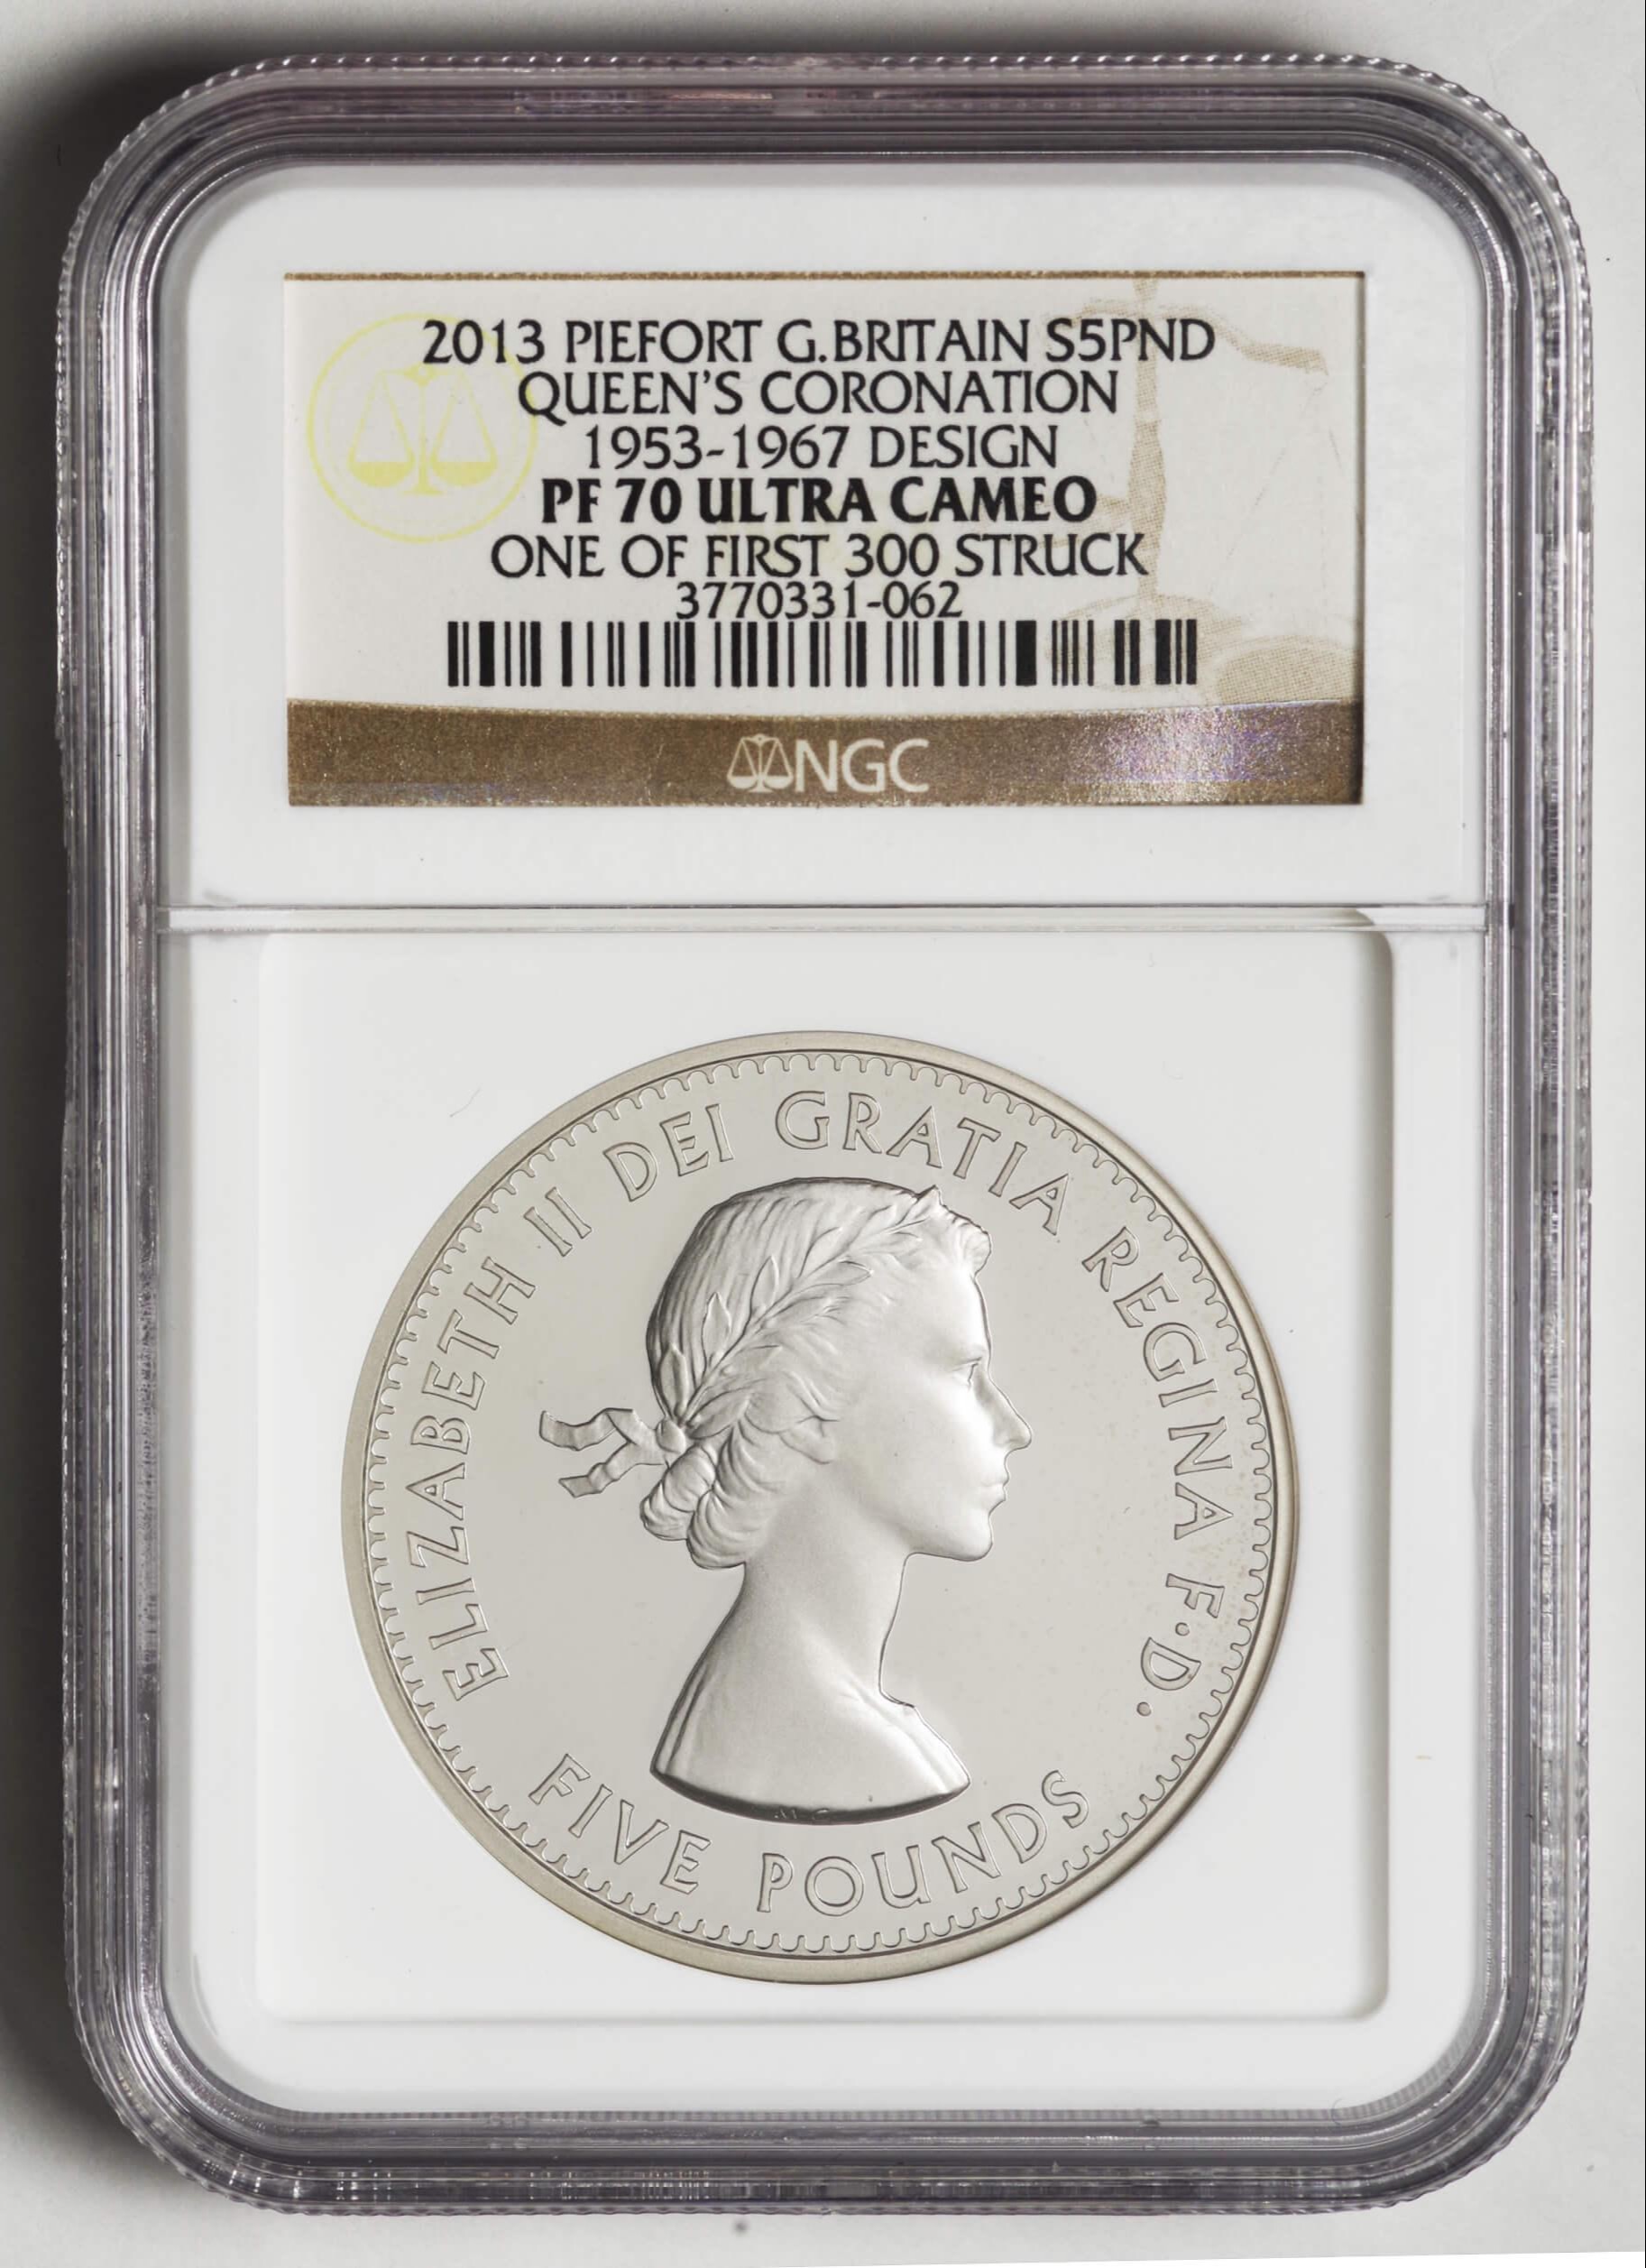 新版 エリザベス女王 2013 戴冠60周年 銀貨 5ポンド ピエフォー 旧貨幣 